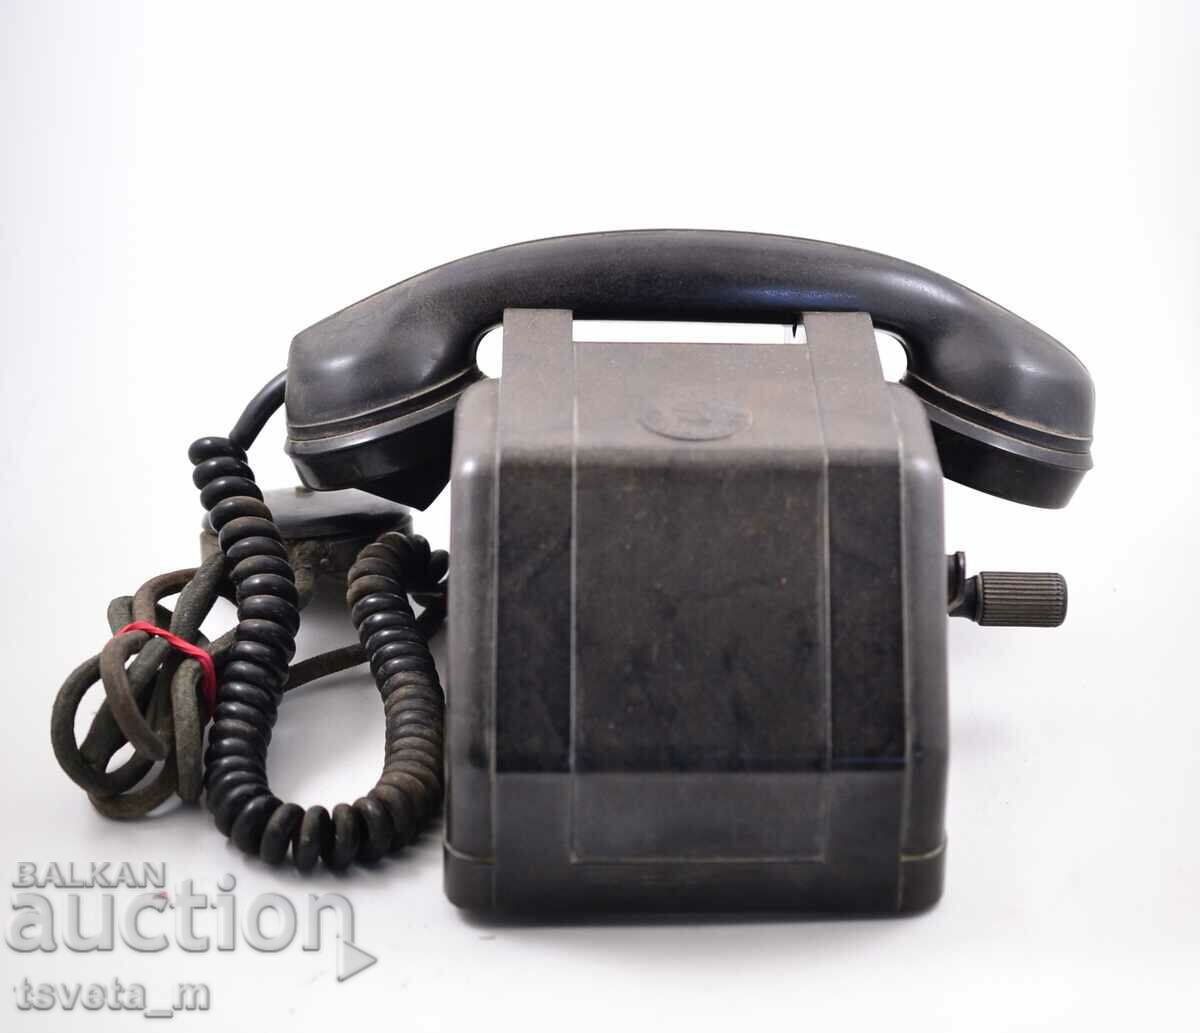 Τηλέφωνο βακελίτη με μανιβέλα KL. Βοροσίλοφ